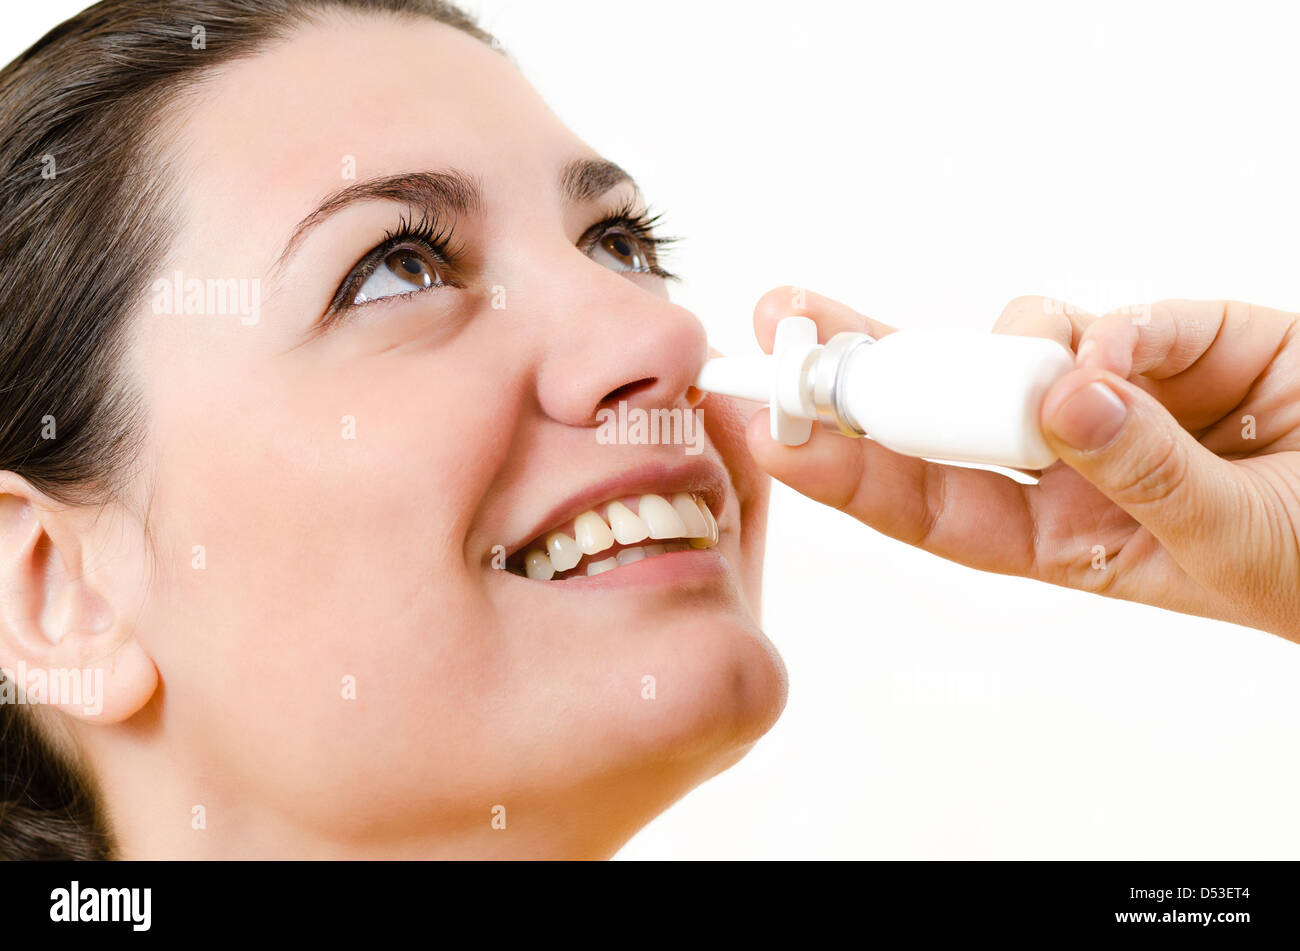 A happy woman using nasal spray Stock Photo